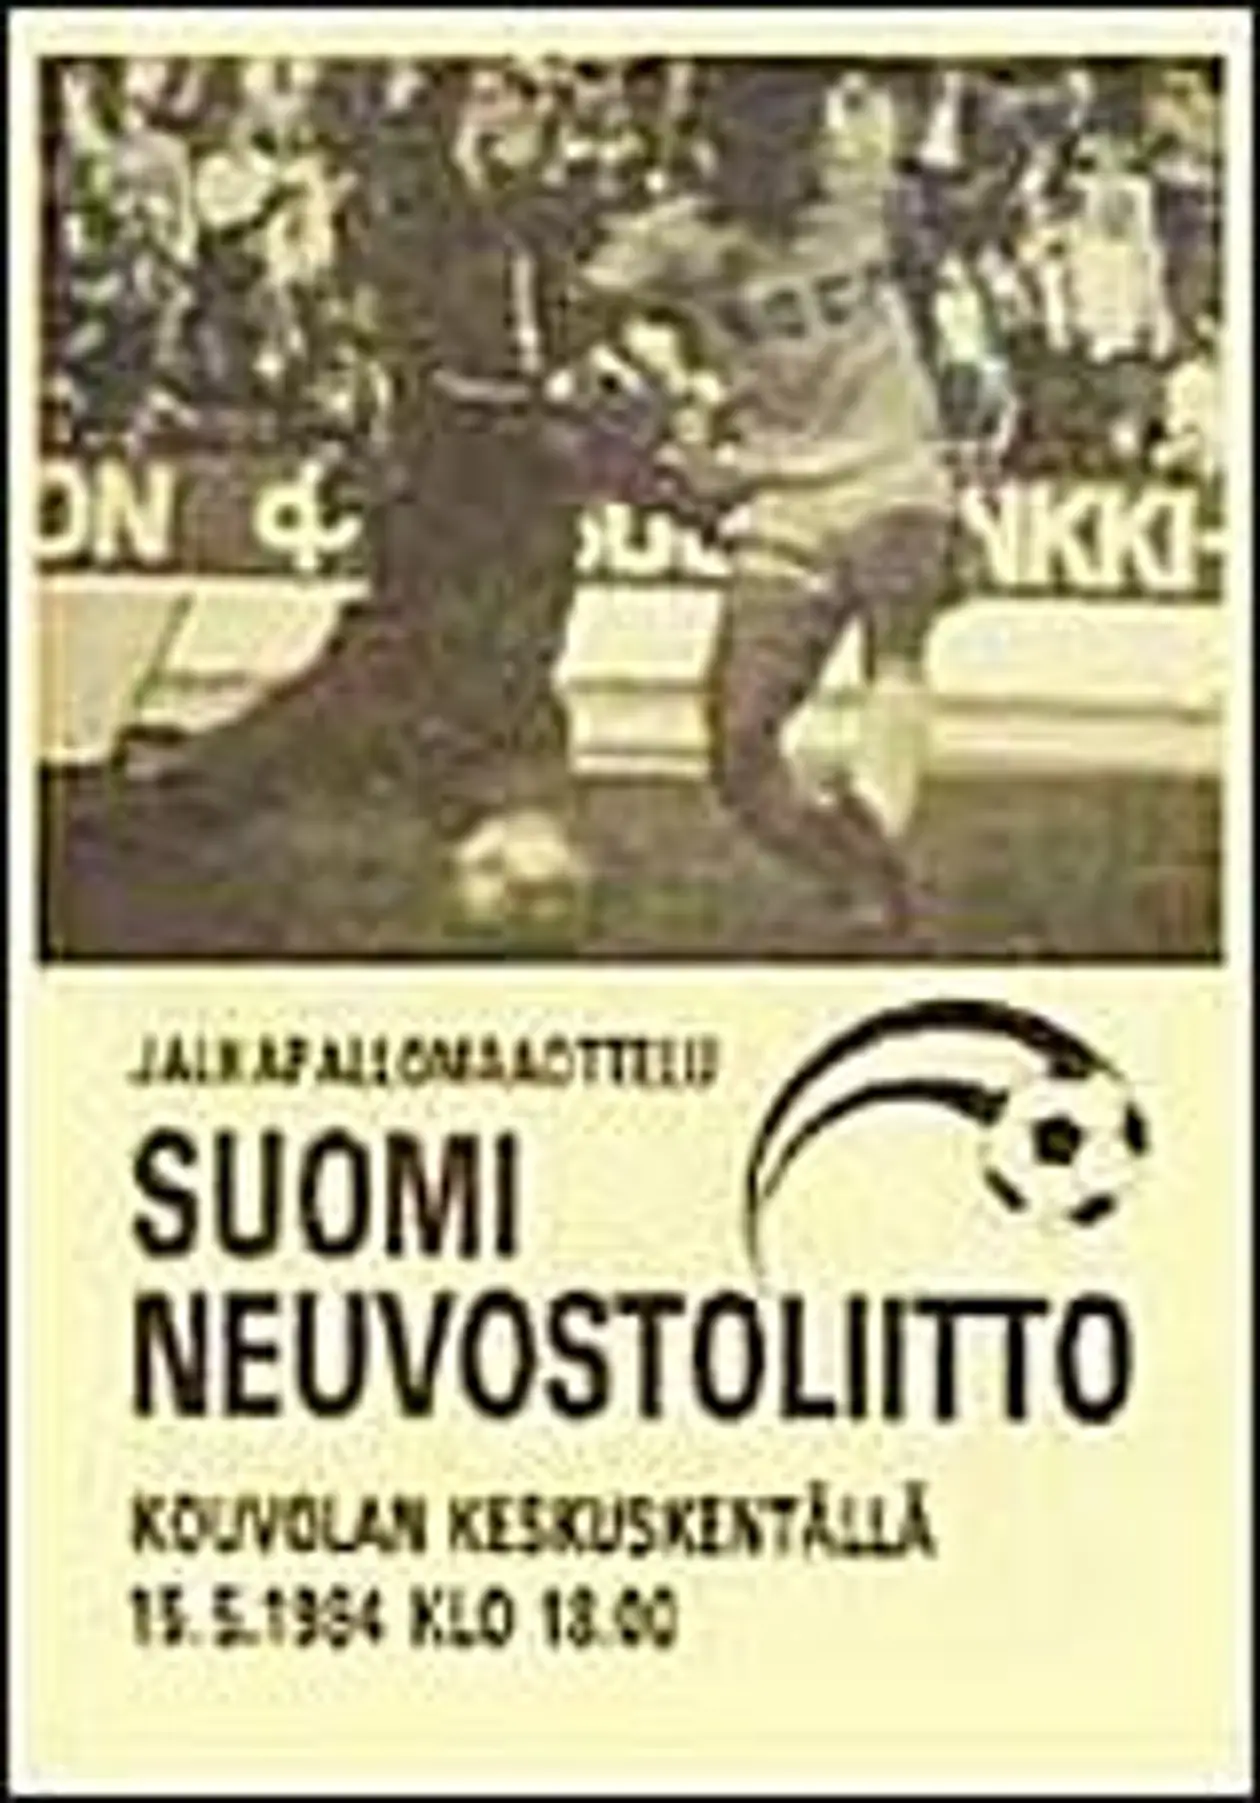 Первый гол Олега Протасова за сборную СССР - видеообзор матча с финнами от 15 мая 1984 года!